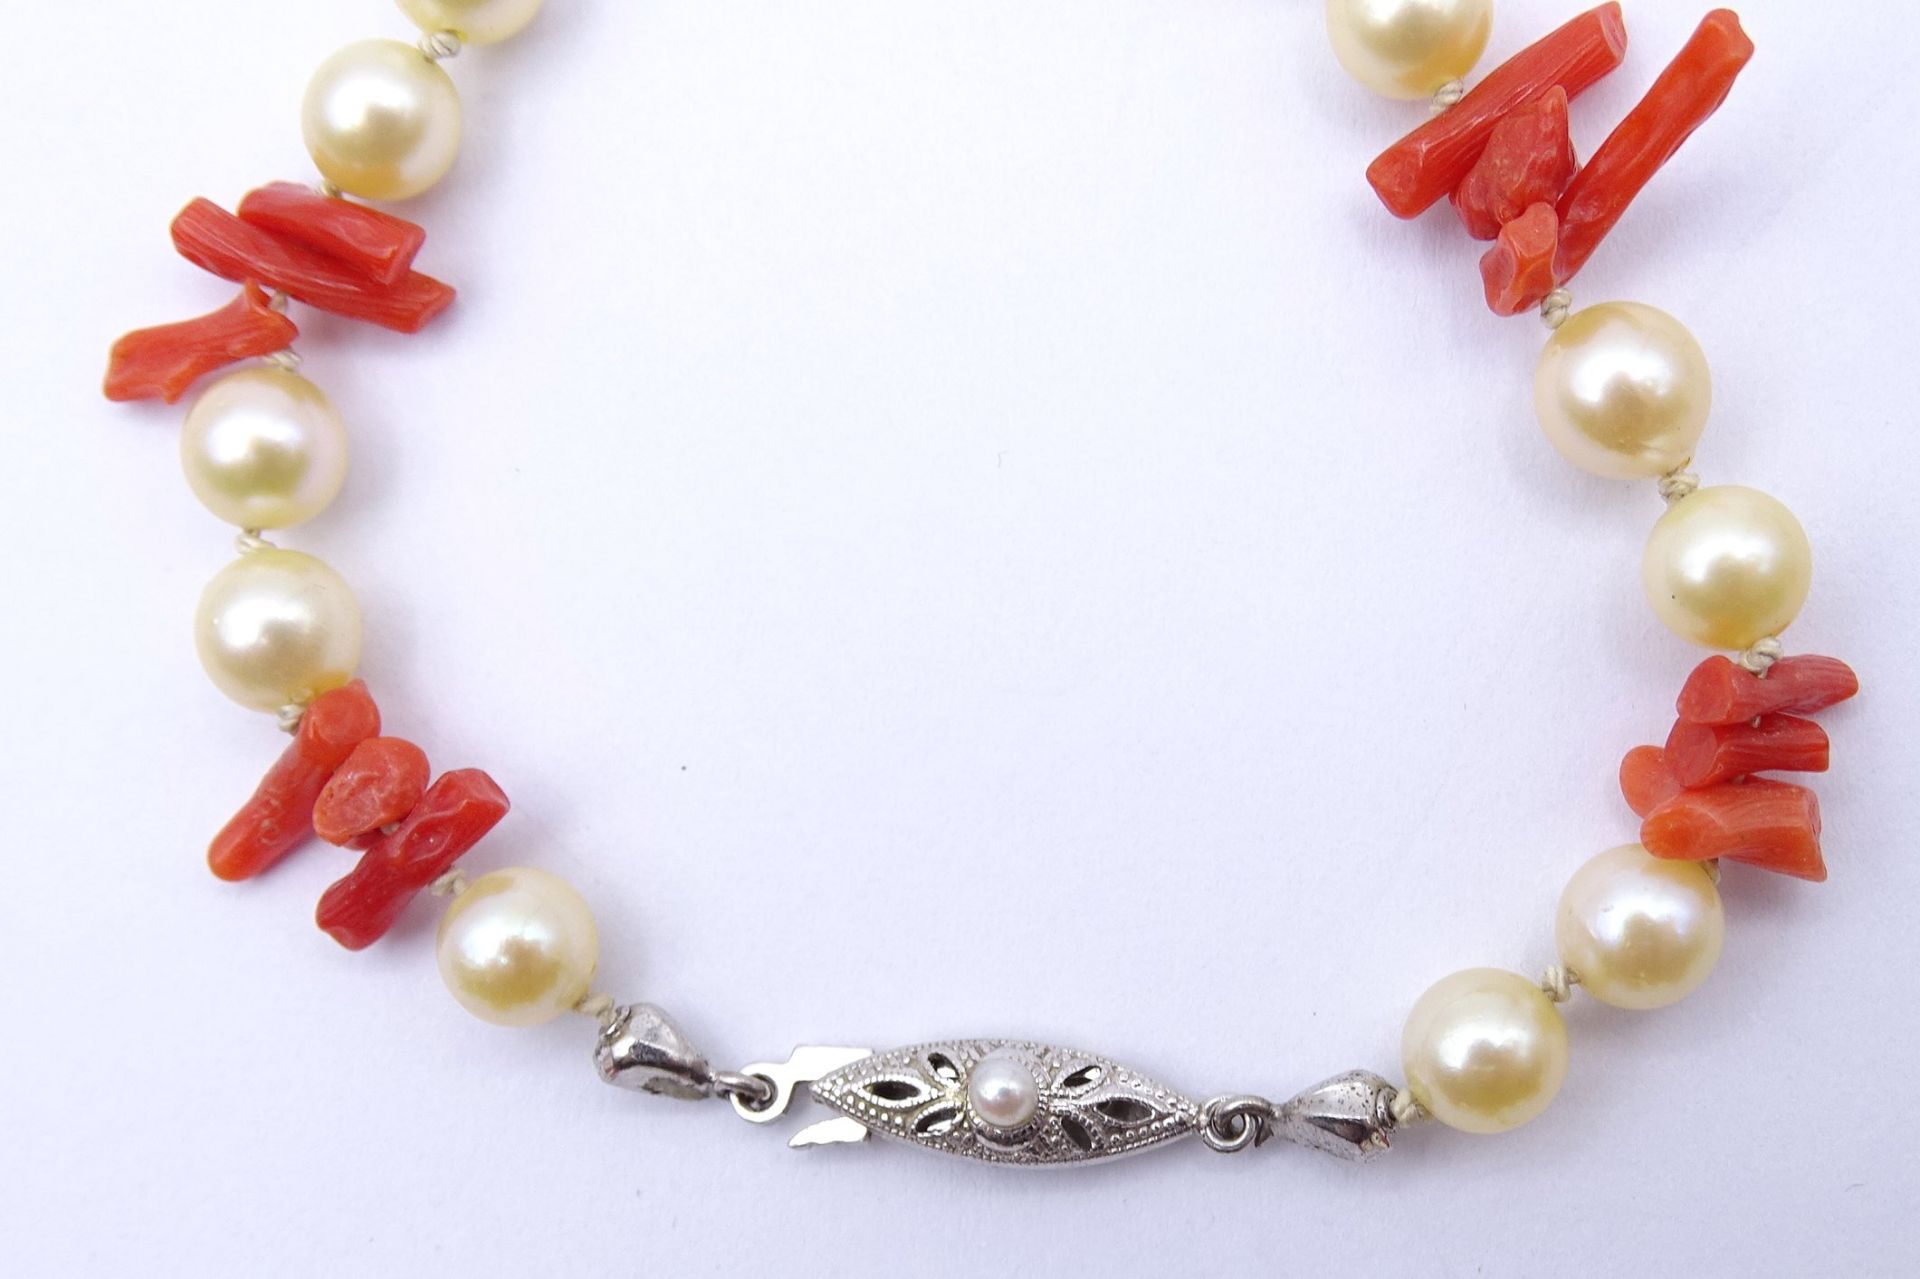 Halskette mit Perlen und Korallenstäbe, Bicolor Goldverschluss GG/WG 0.585, L. 80cm, 42,8g. - Image 2 of 4